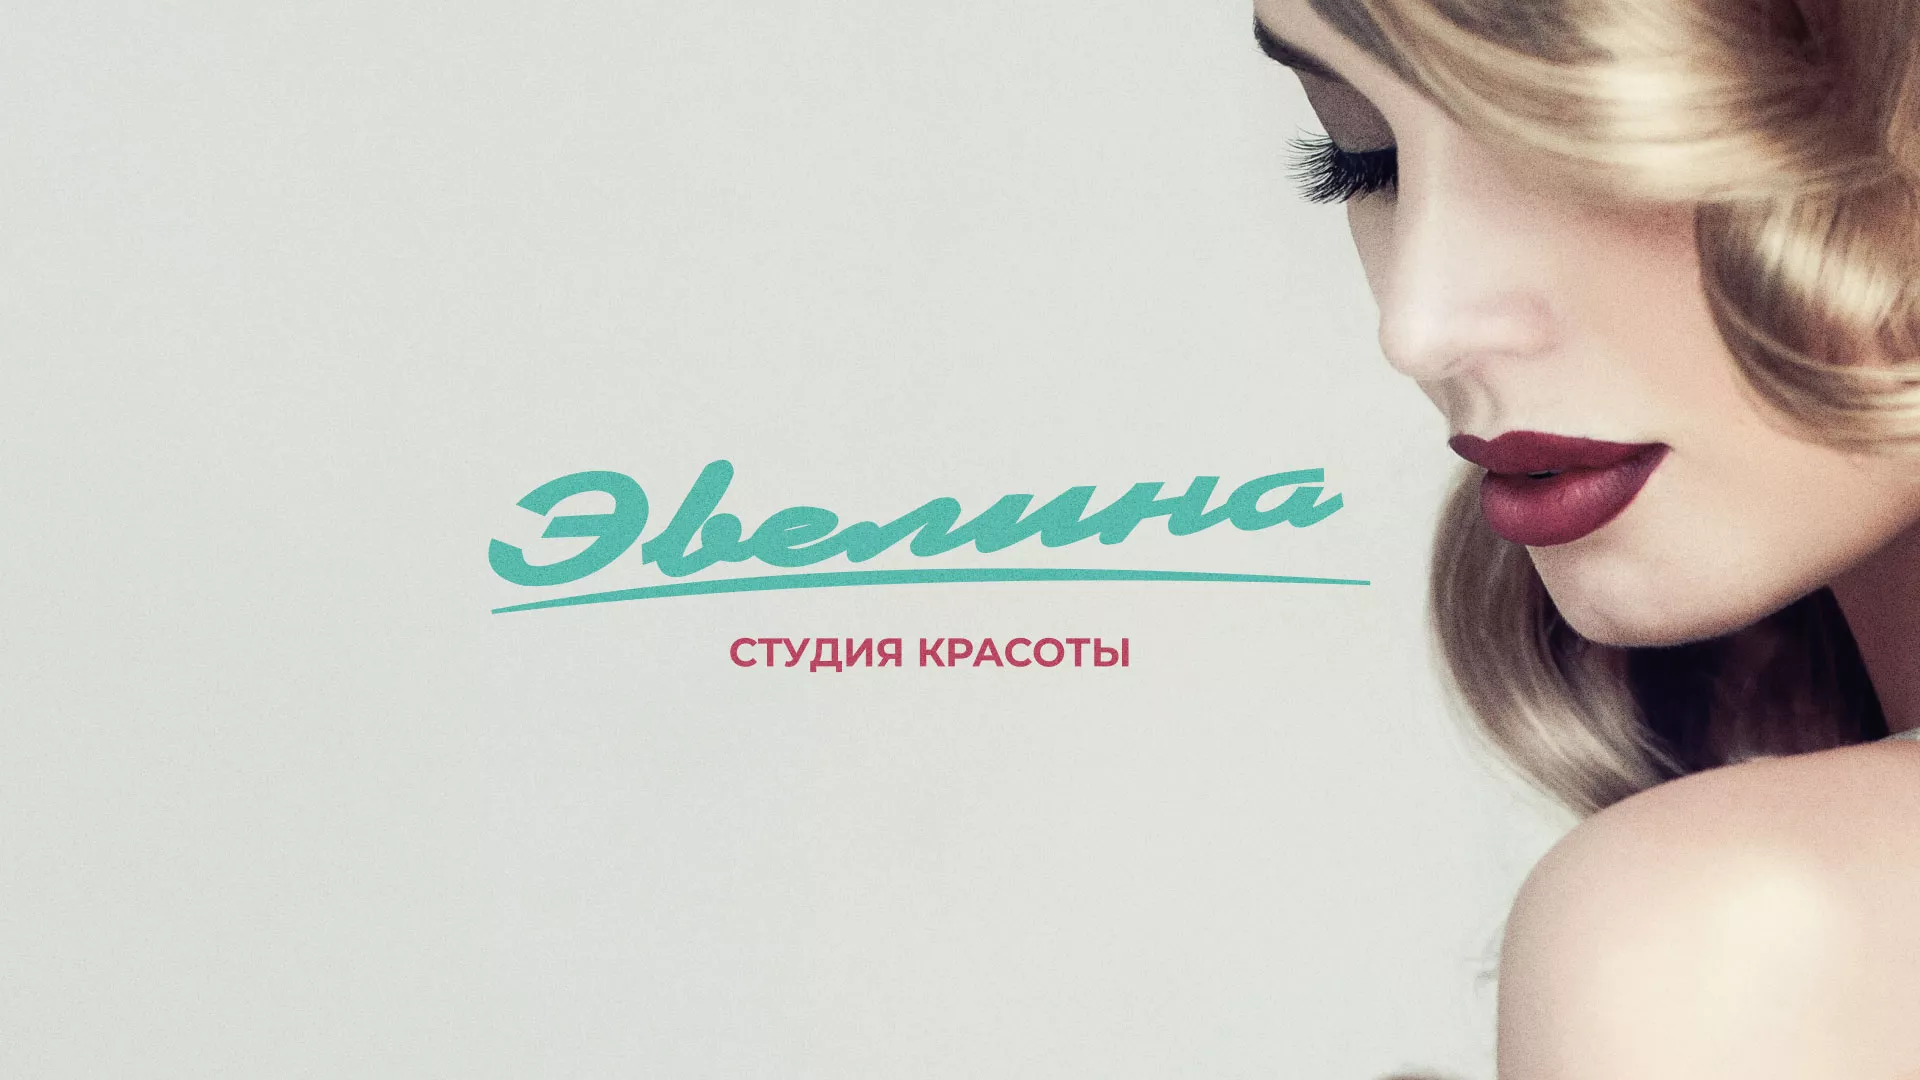 Разработка сайта для салона красоты «Эвелина» в Мариинске